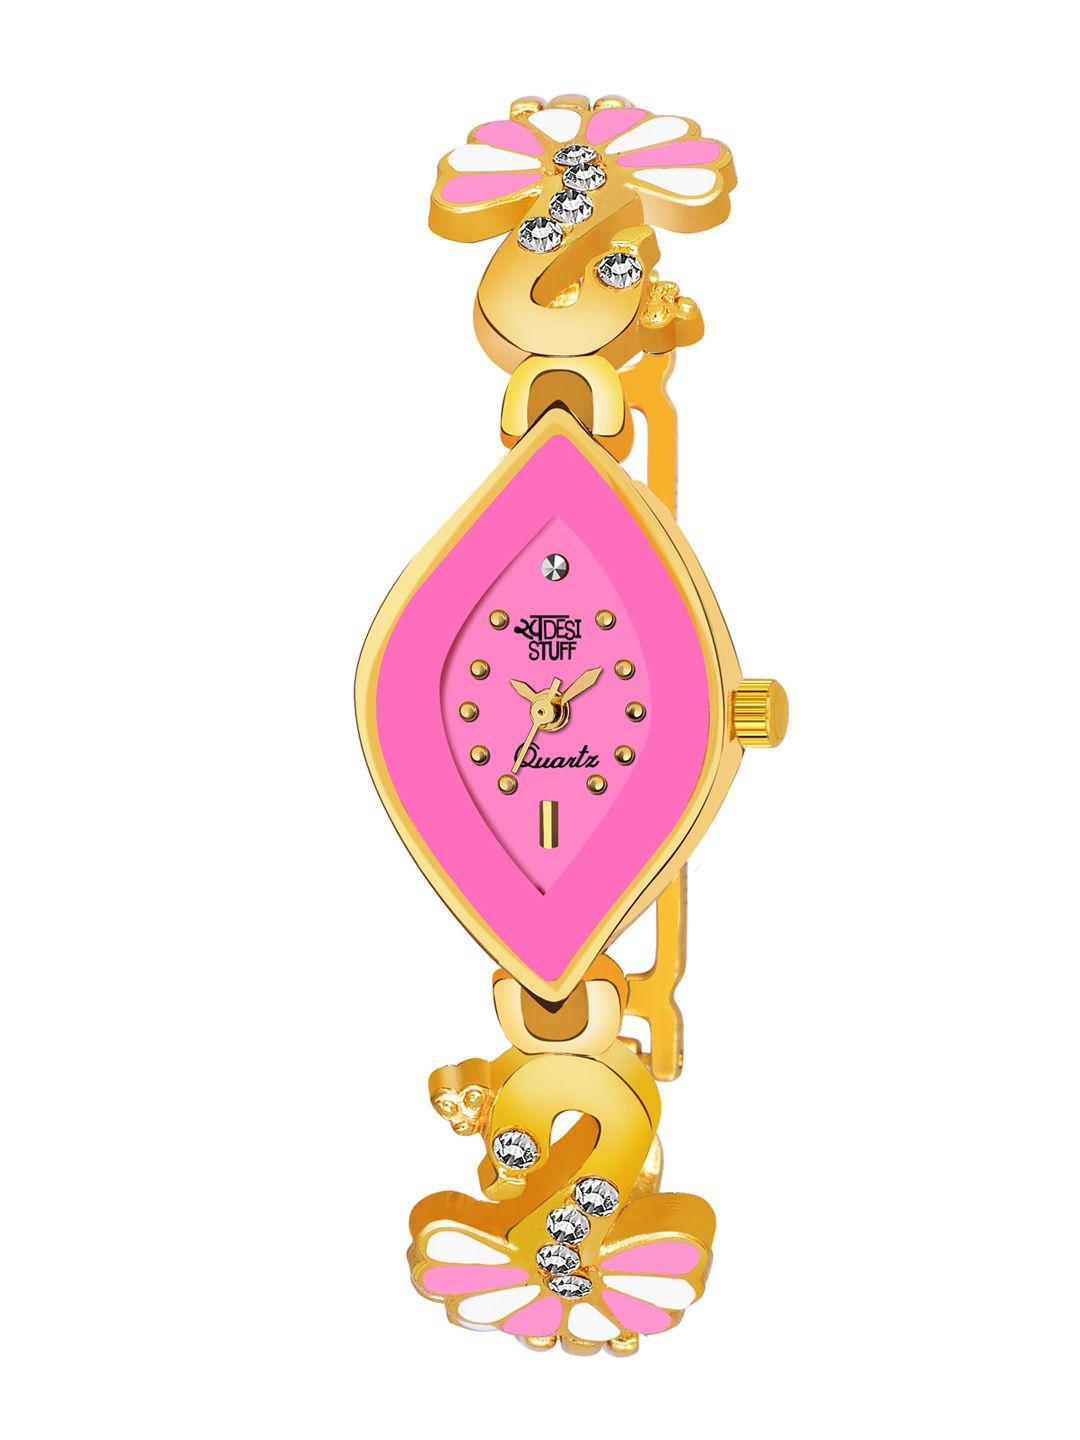 swadesi stuff girls gold-toned & pink analogue watch sds 82